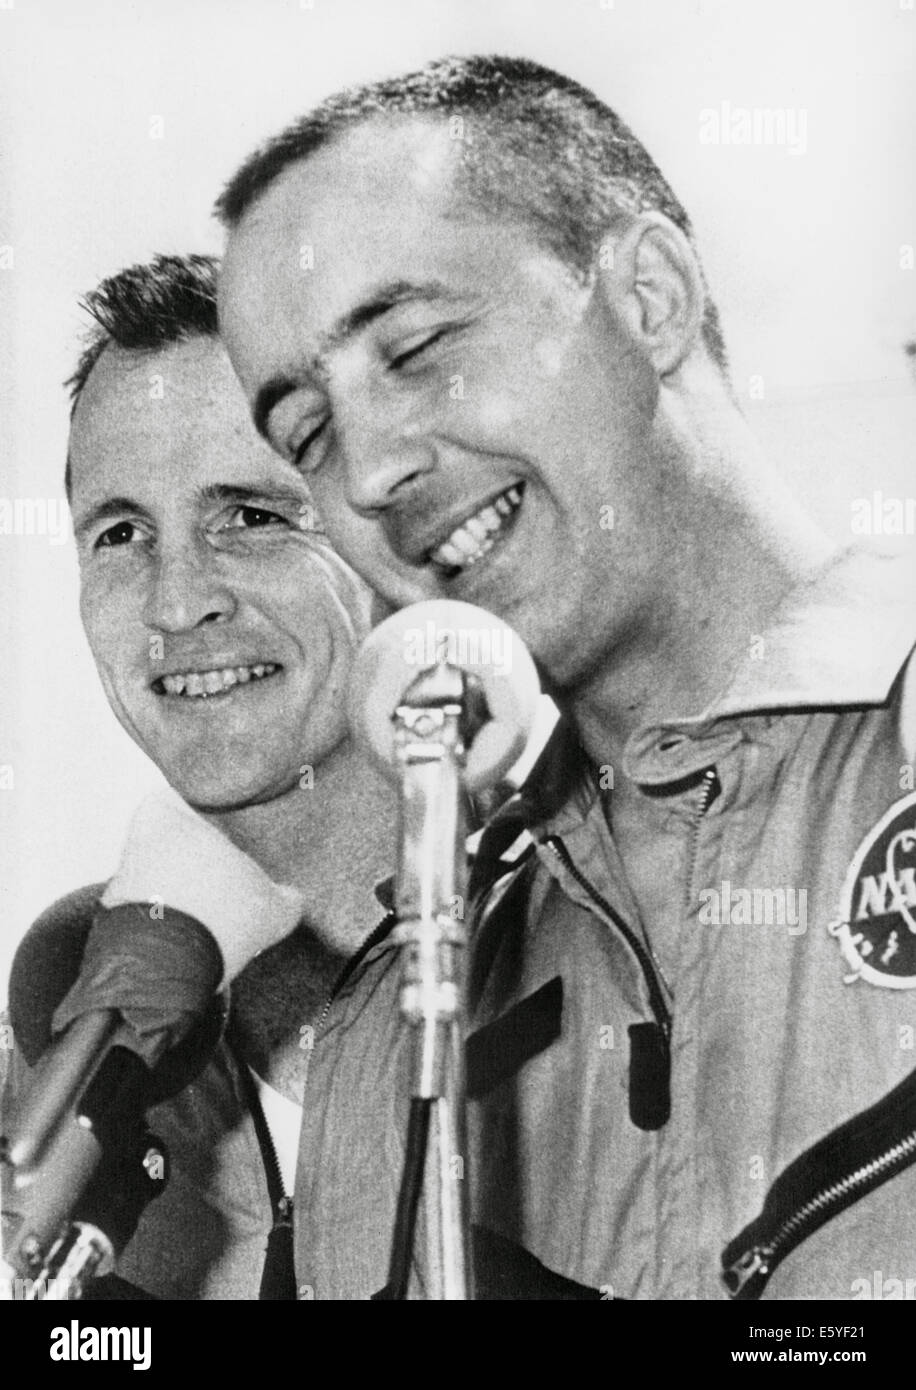 Gli astronauti della NASA James McDivitt (R) e Edward II bianco alla conferenza stampa dopo il completamento della Gemini IV missione spaziale, 1965 Foto Stock